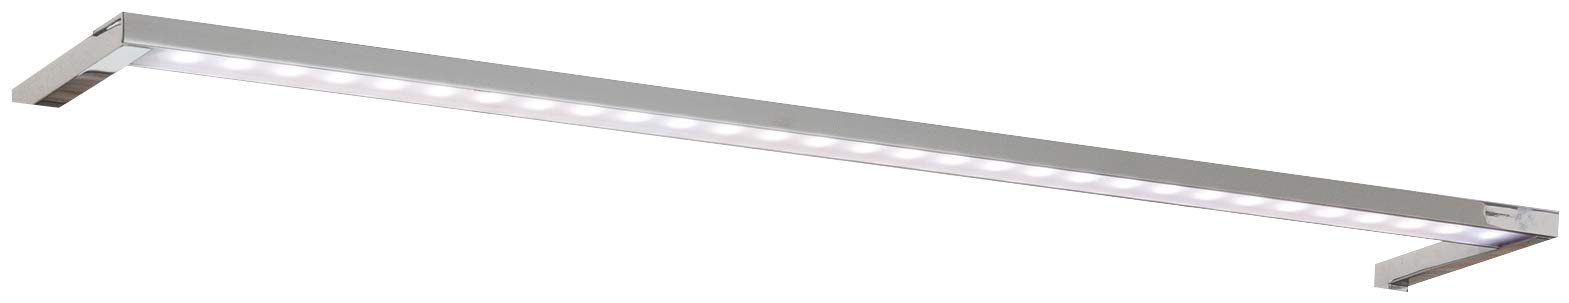 FACKELMANN LED-Aufsatzleuchte für Spiegelschrank SCENO / Maße (B x H x T): ca. 56 x 2 x 10 cm / hochwertige LED-Leuchte fürs Badezimmer / Farbe: Silber / Energieeffizienzklasse A